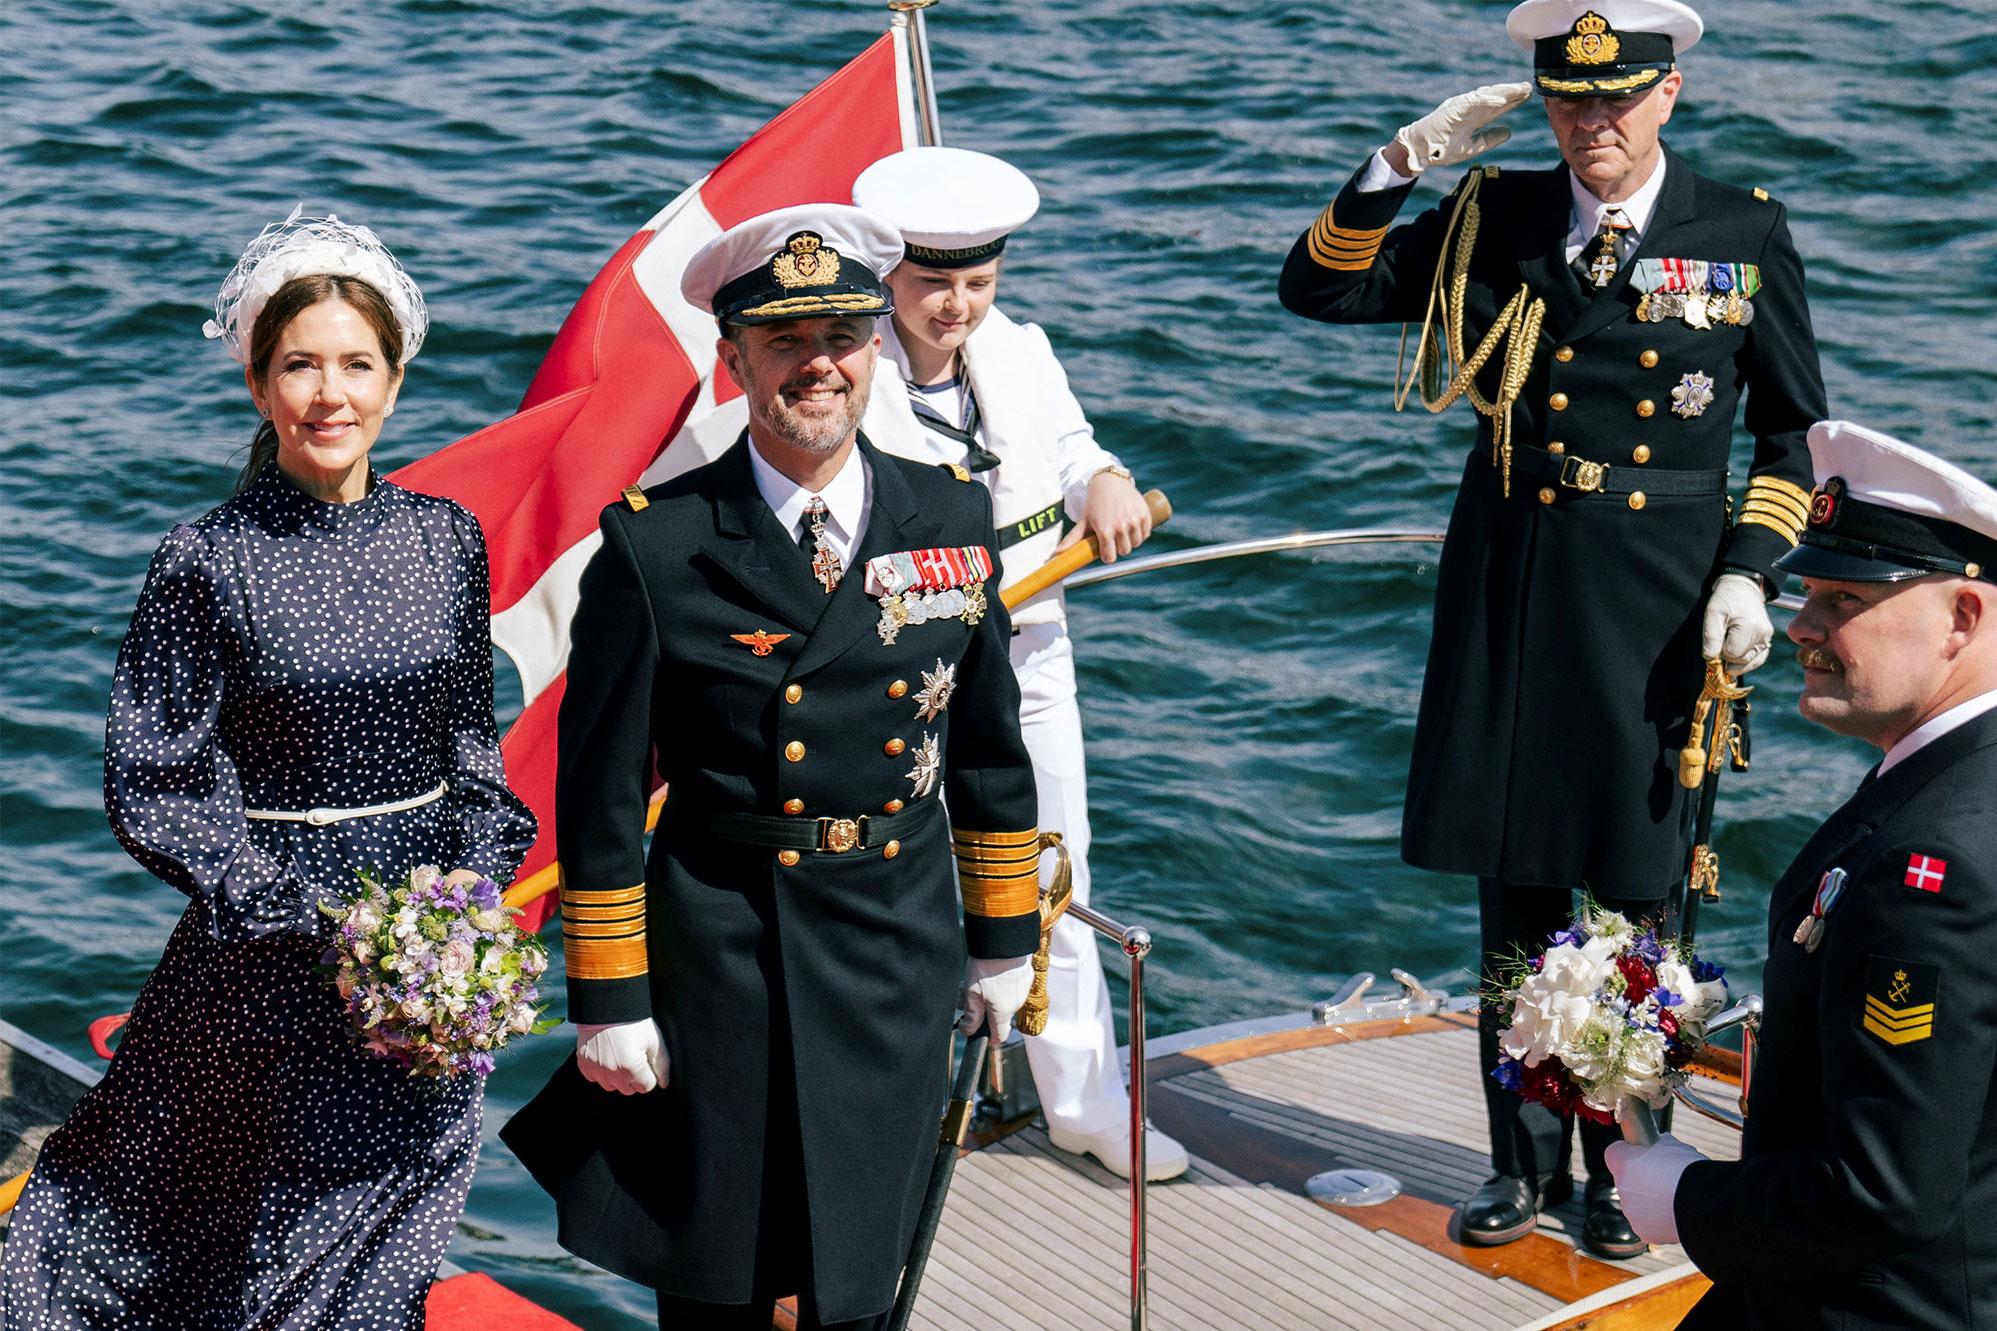 mary et frederik : première croisière estivale pour le couple royal du danemark